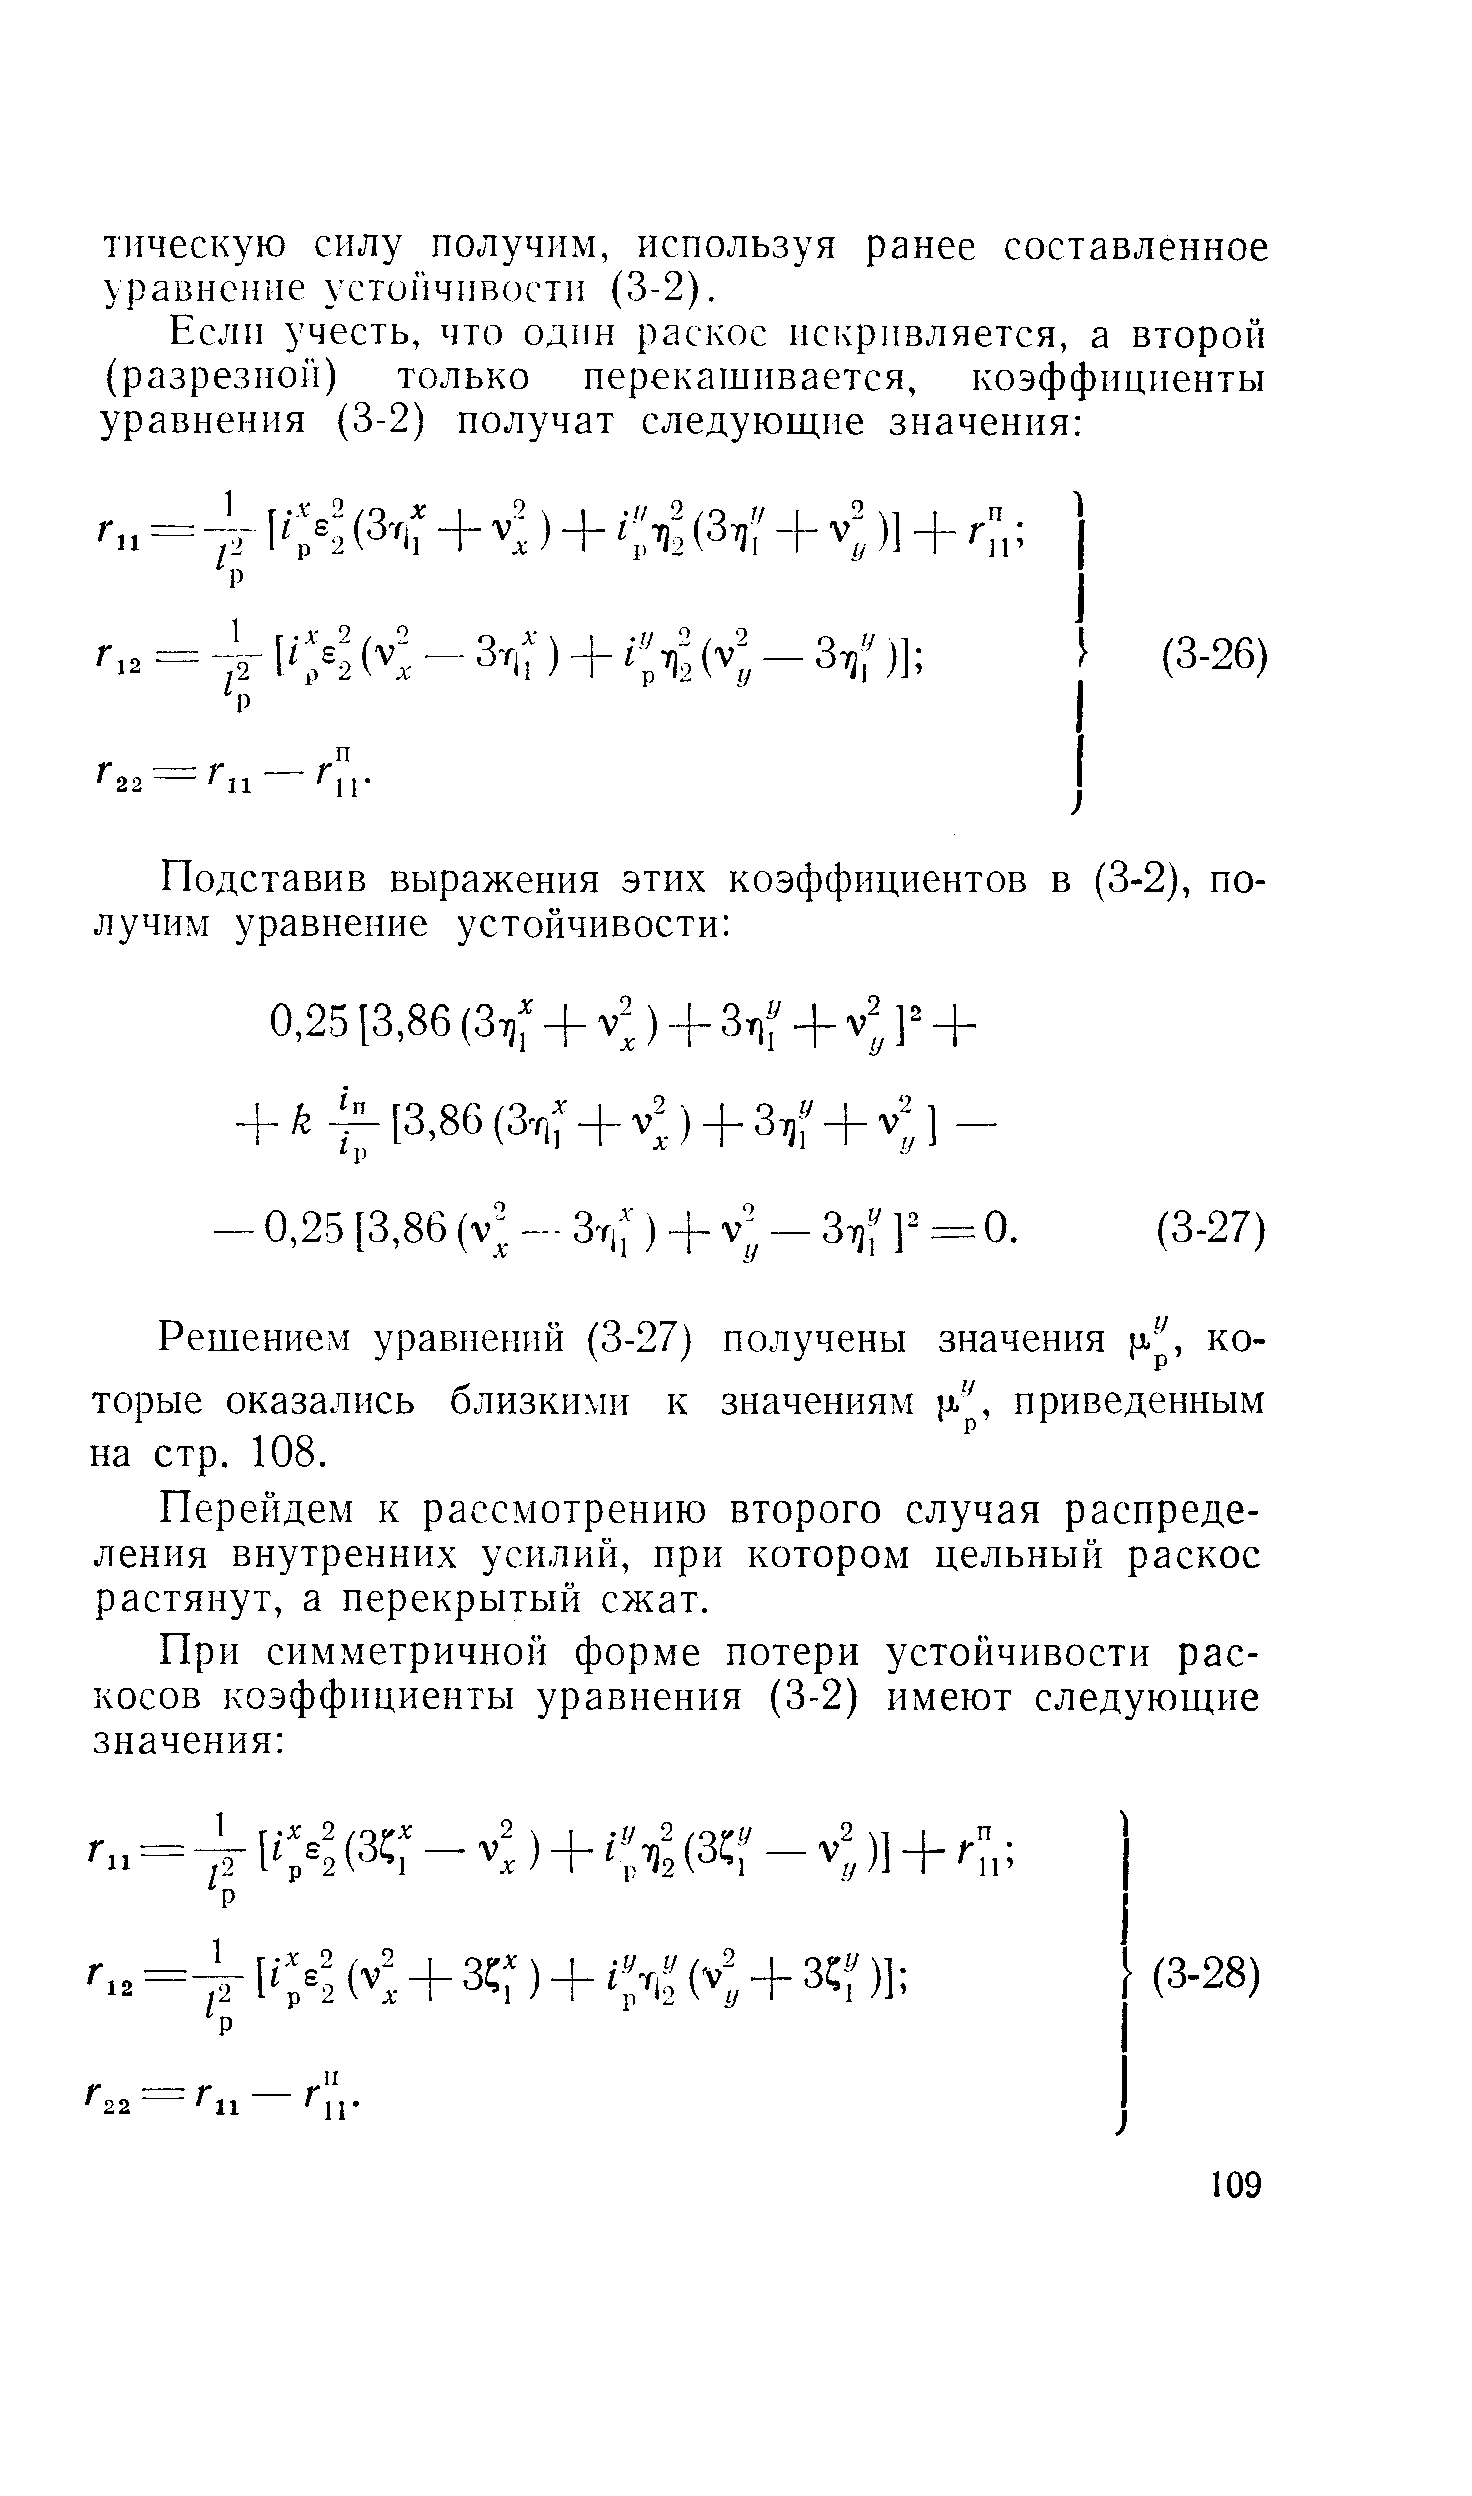 Решением уравнений (3-27) получены значения р. , которые оказались близкихп-г к значениям а , приведенным на стр. 108.
